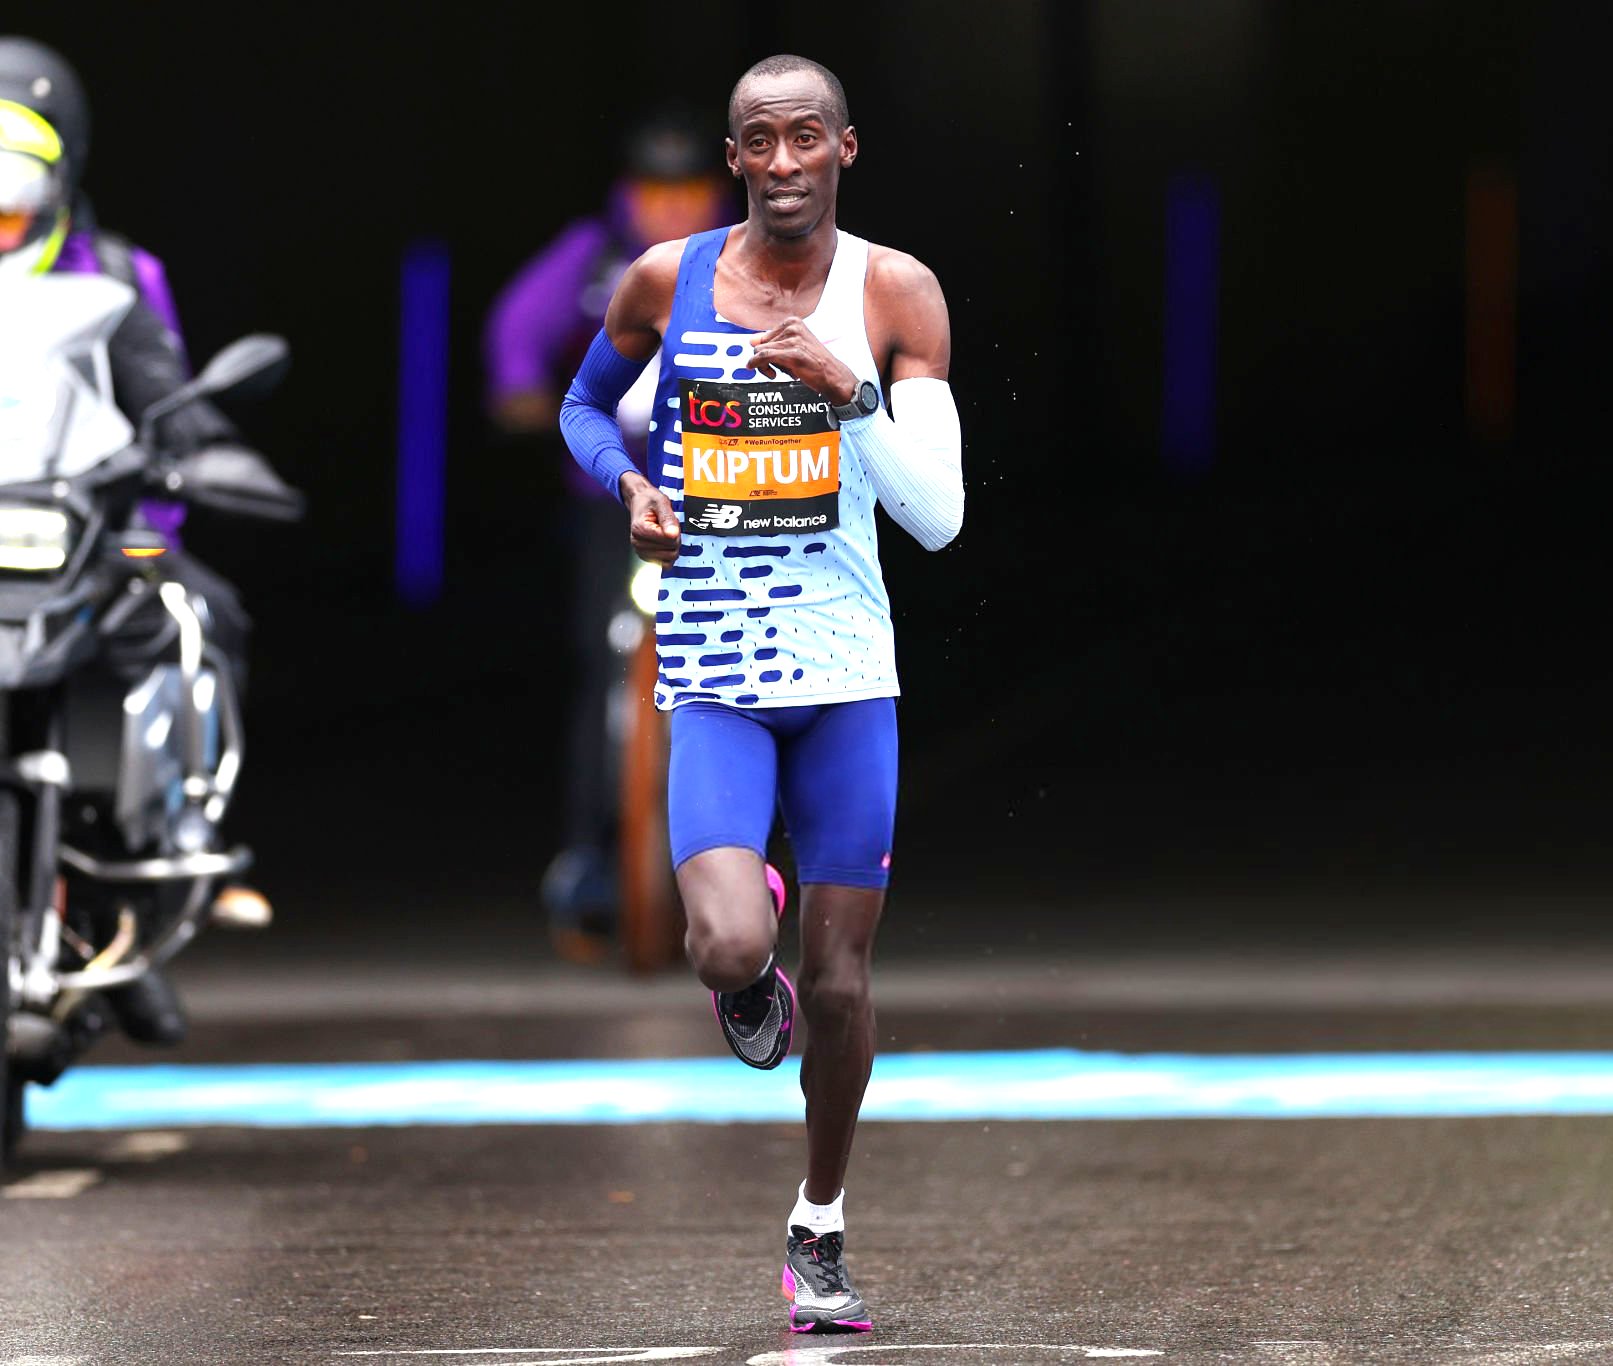 Poginuo Kelvin Kiptum, svjetski rekorder u maratonu